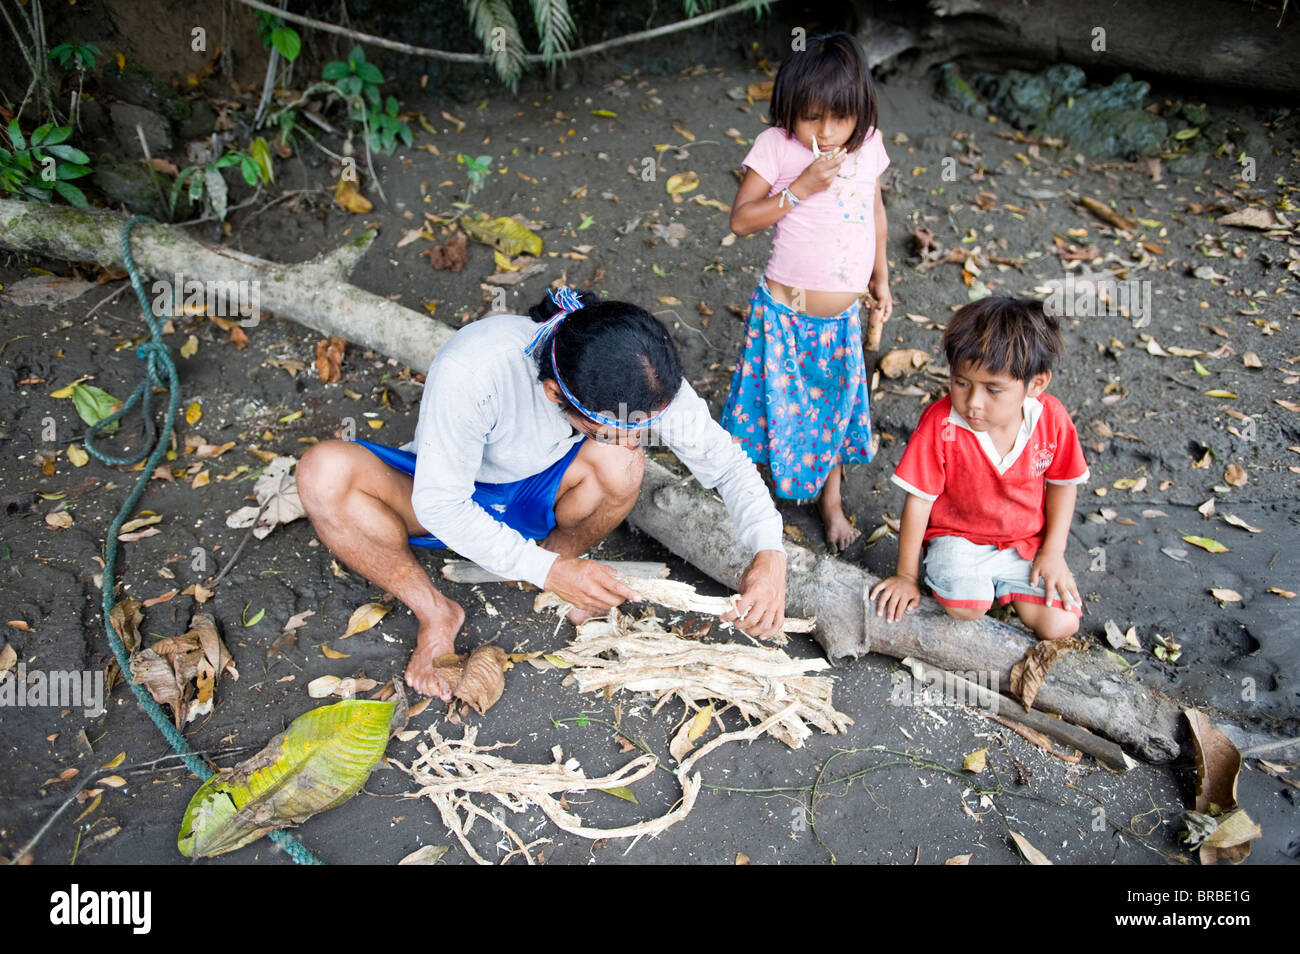 Preparing the barbasco root to go fishing, Amazon, Ecuador Stock Photo